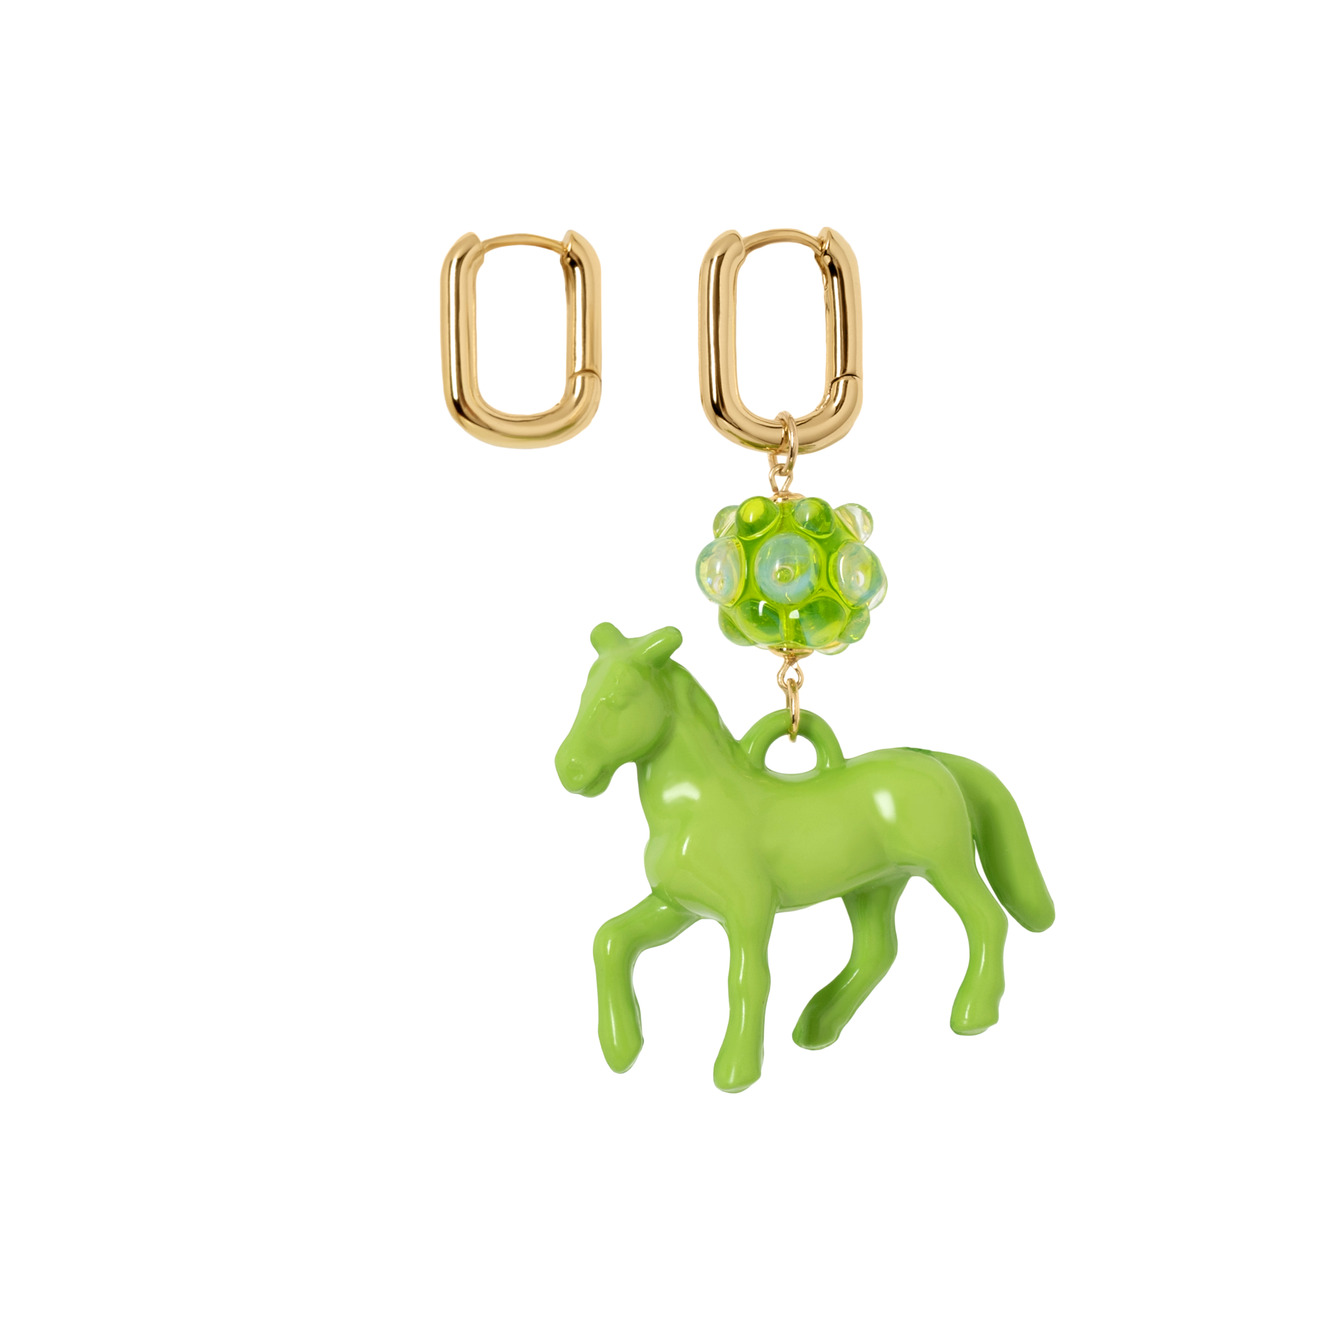 Kotlo Studio Золотистые серьги с зеленой лошадкой и бусиной Мурано aqua золотистые серьги с крупной бусиной и подвеской сердцем